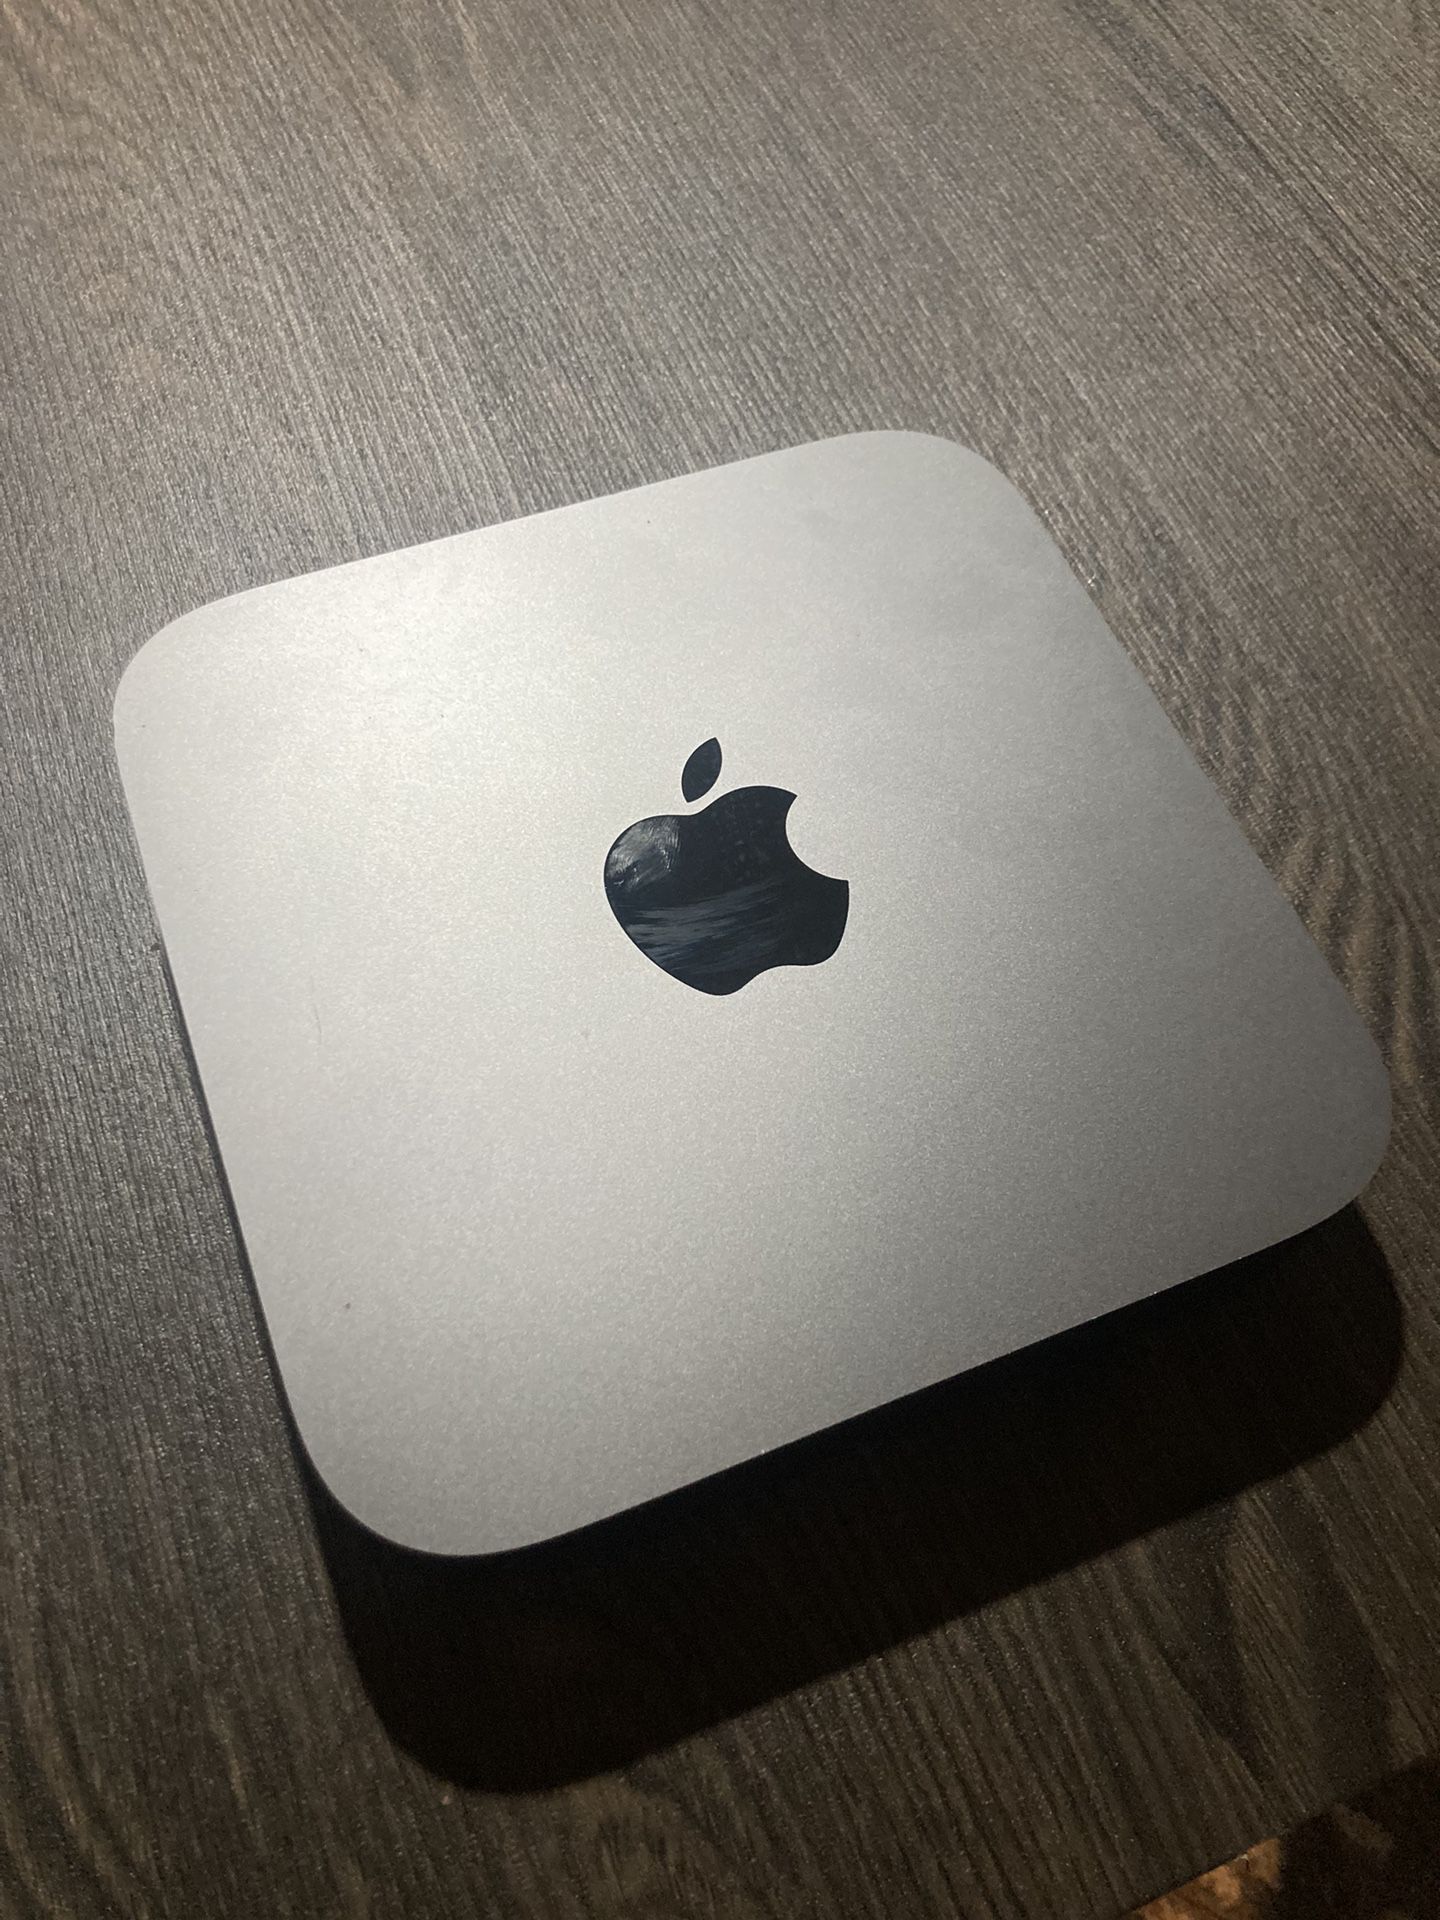 Apple 2018 Mac Mini